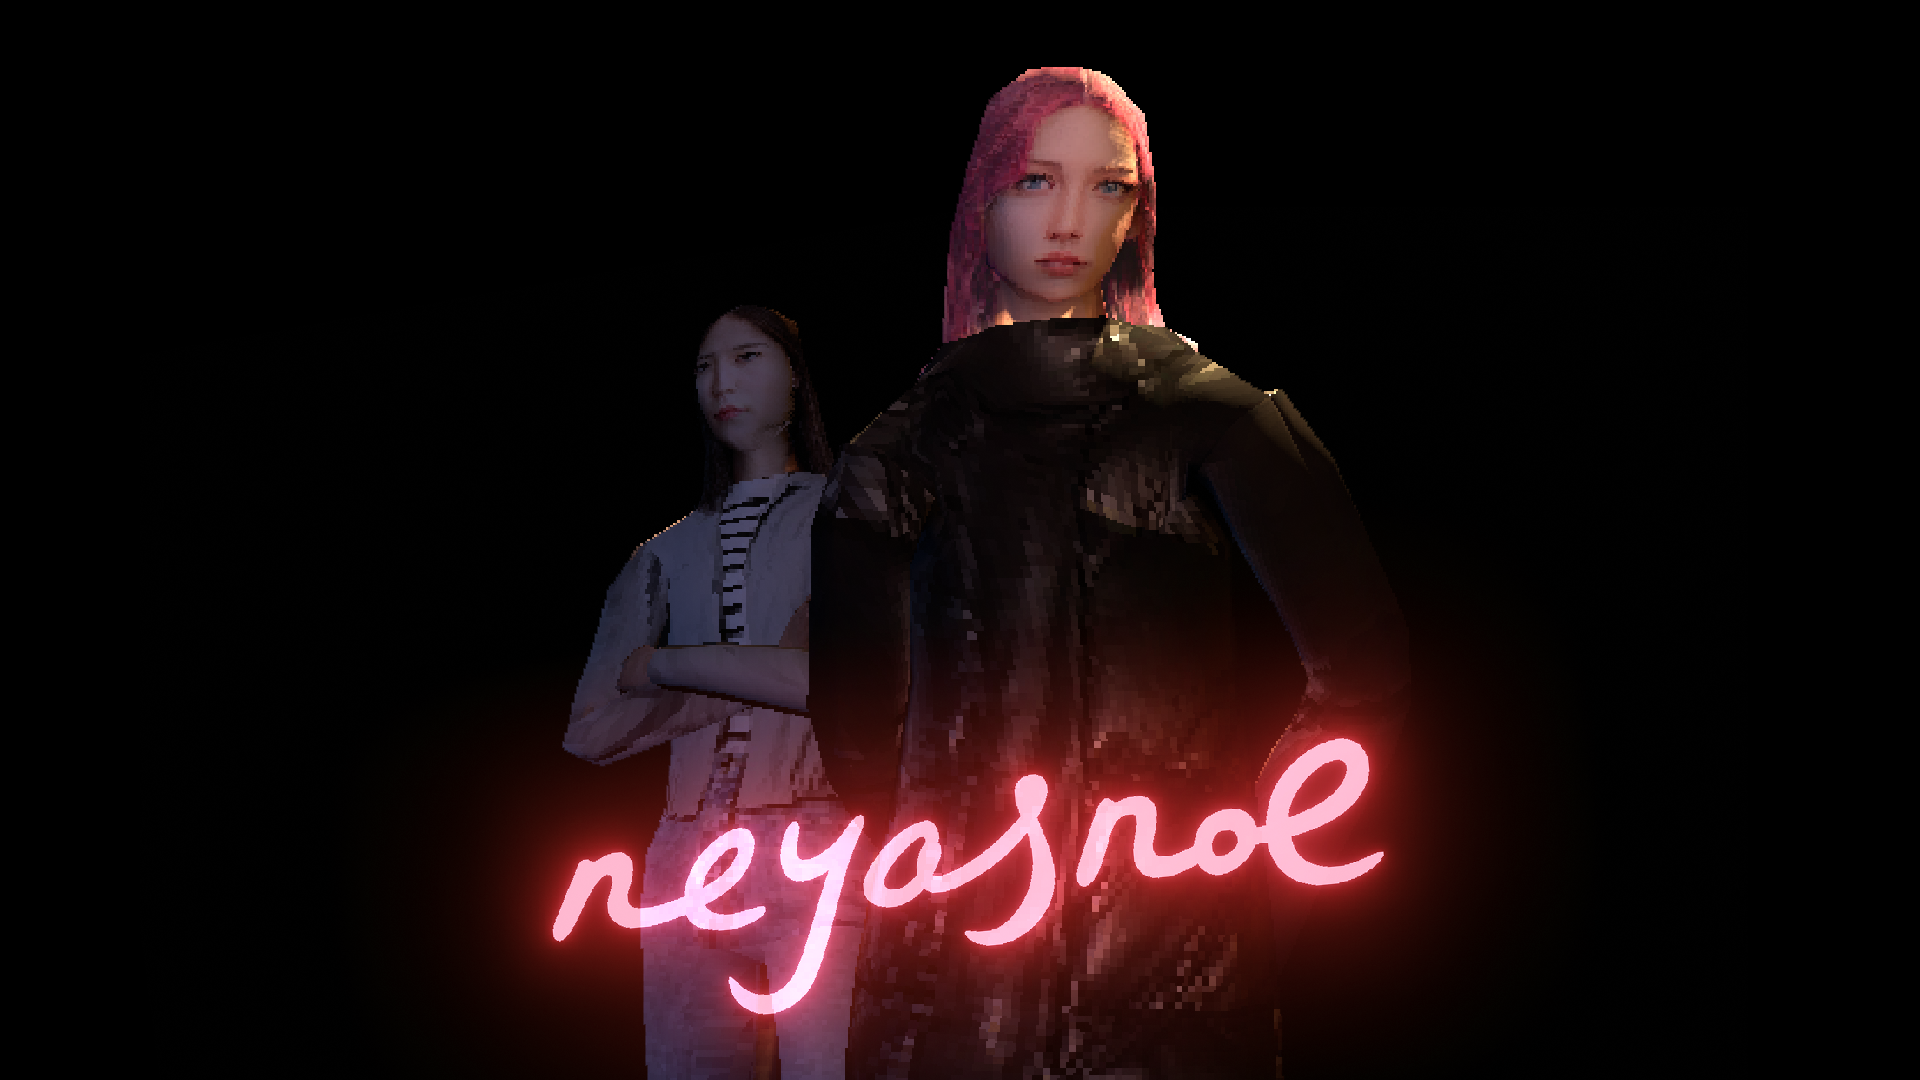 Neyasnoe (2023) Available Now on Steam